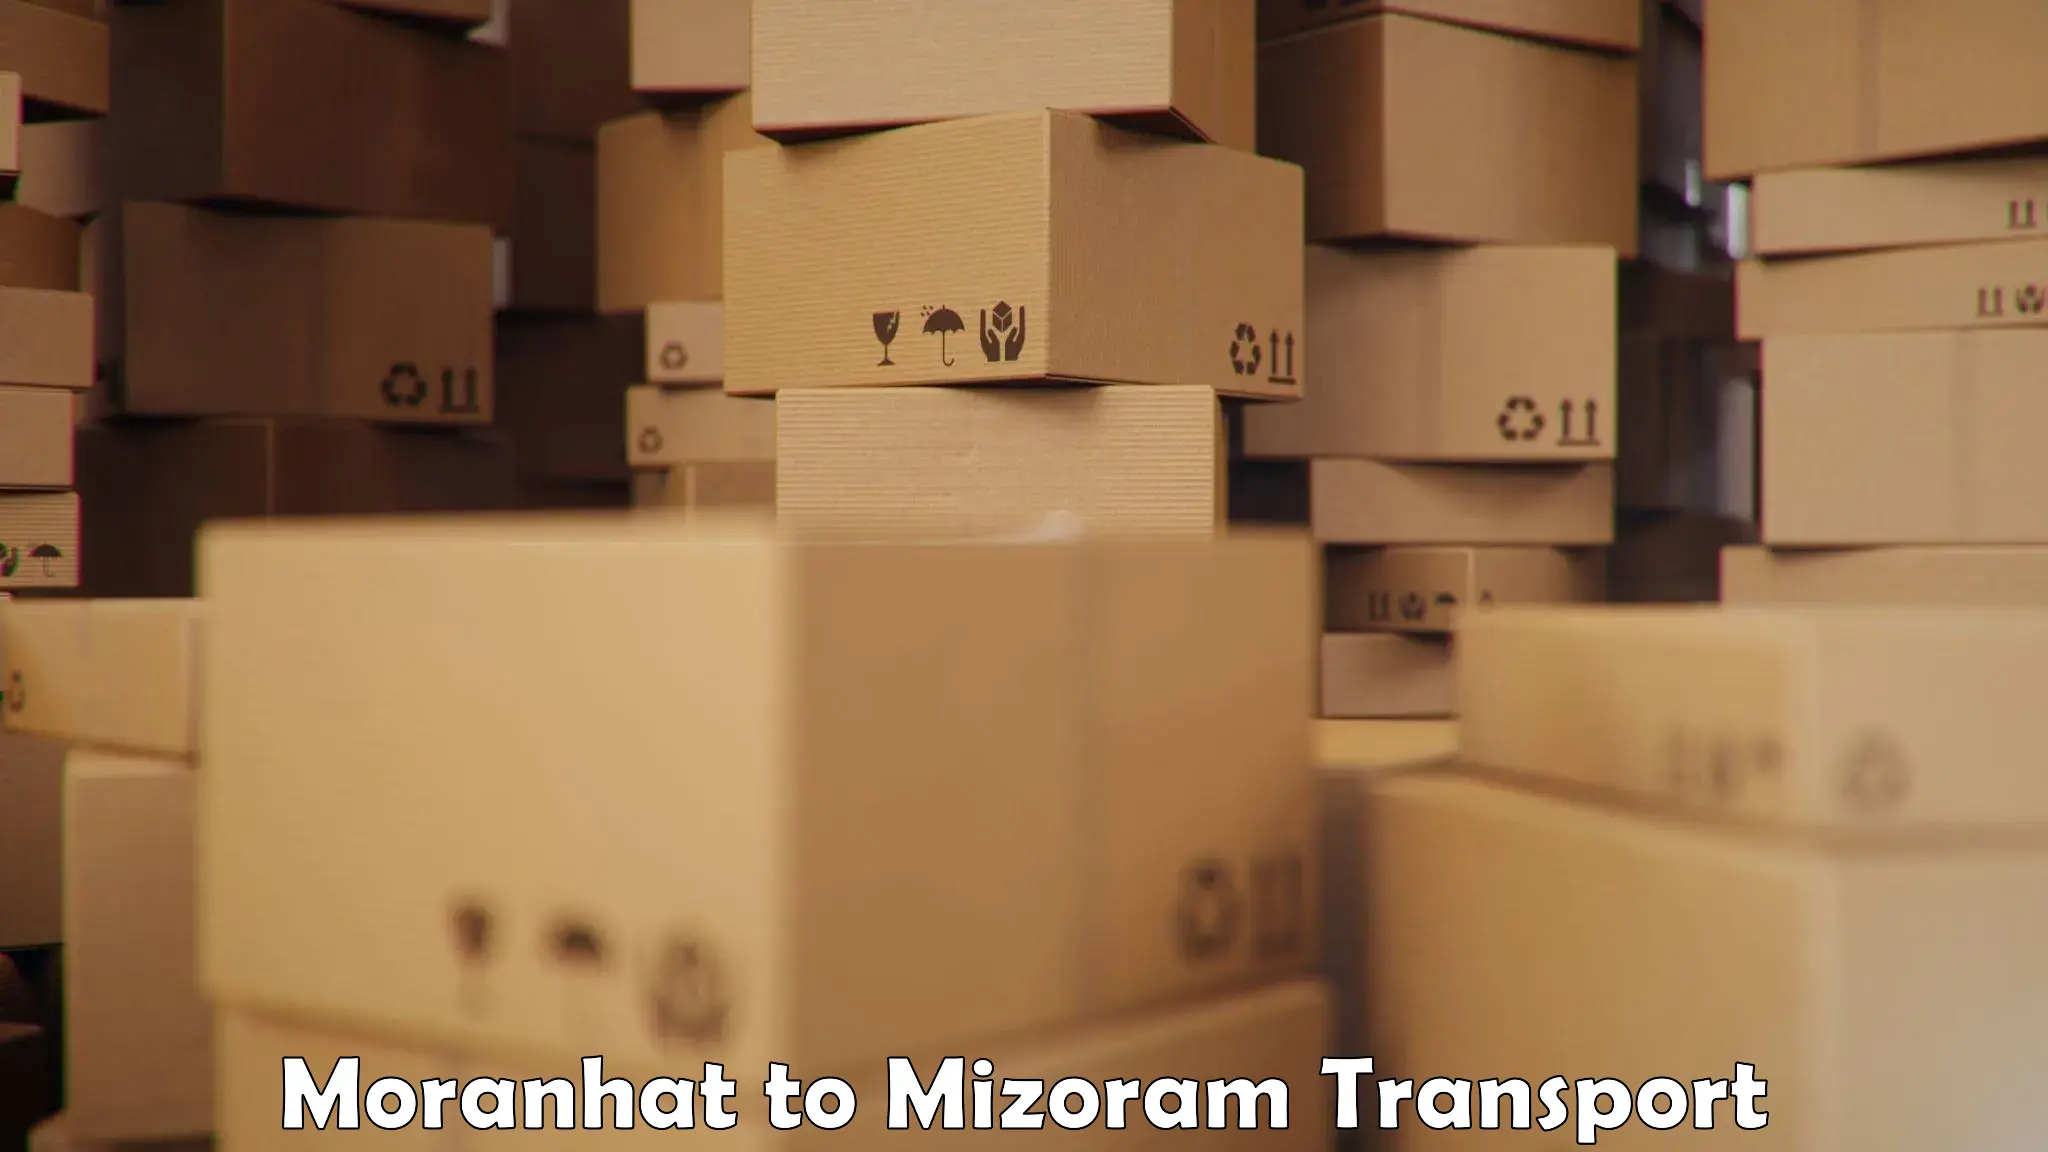 Truck transport companies in India Moranhat to Mizoram